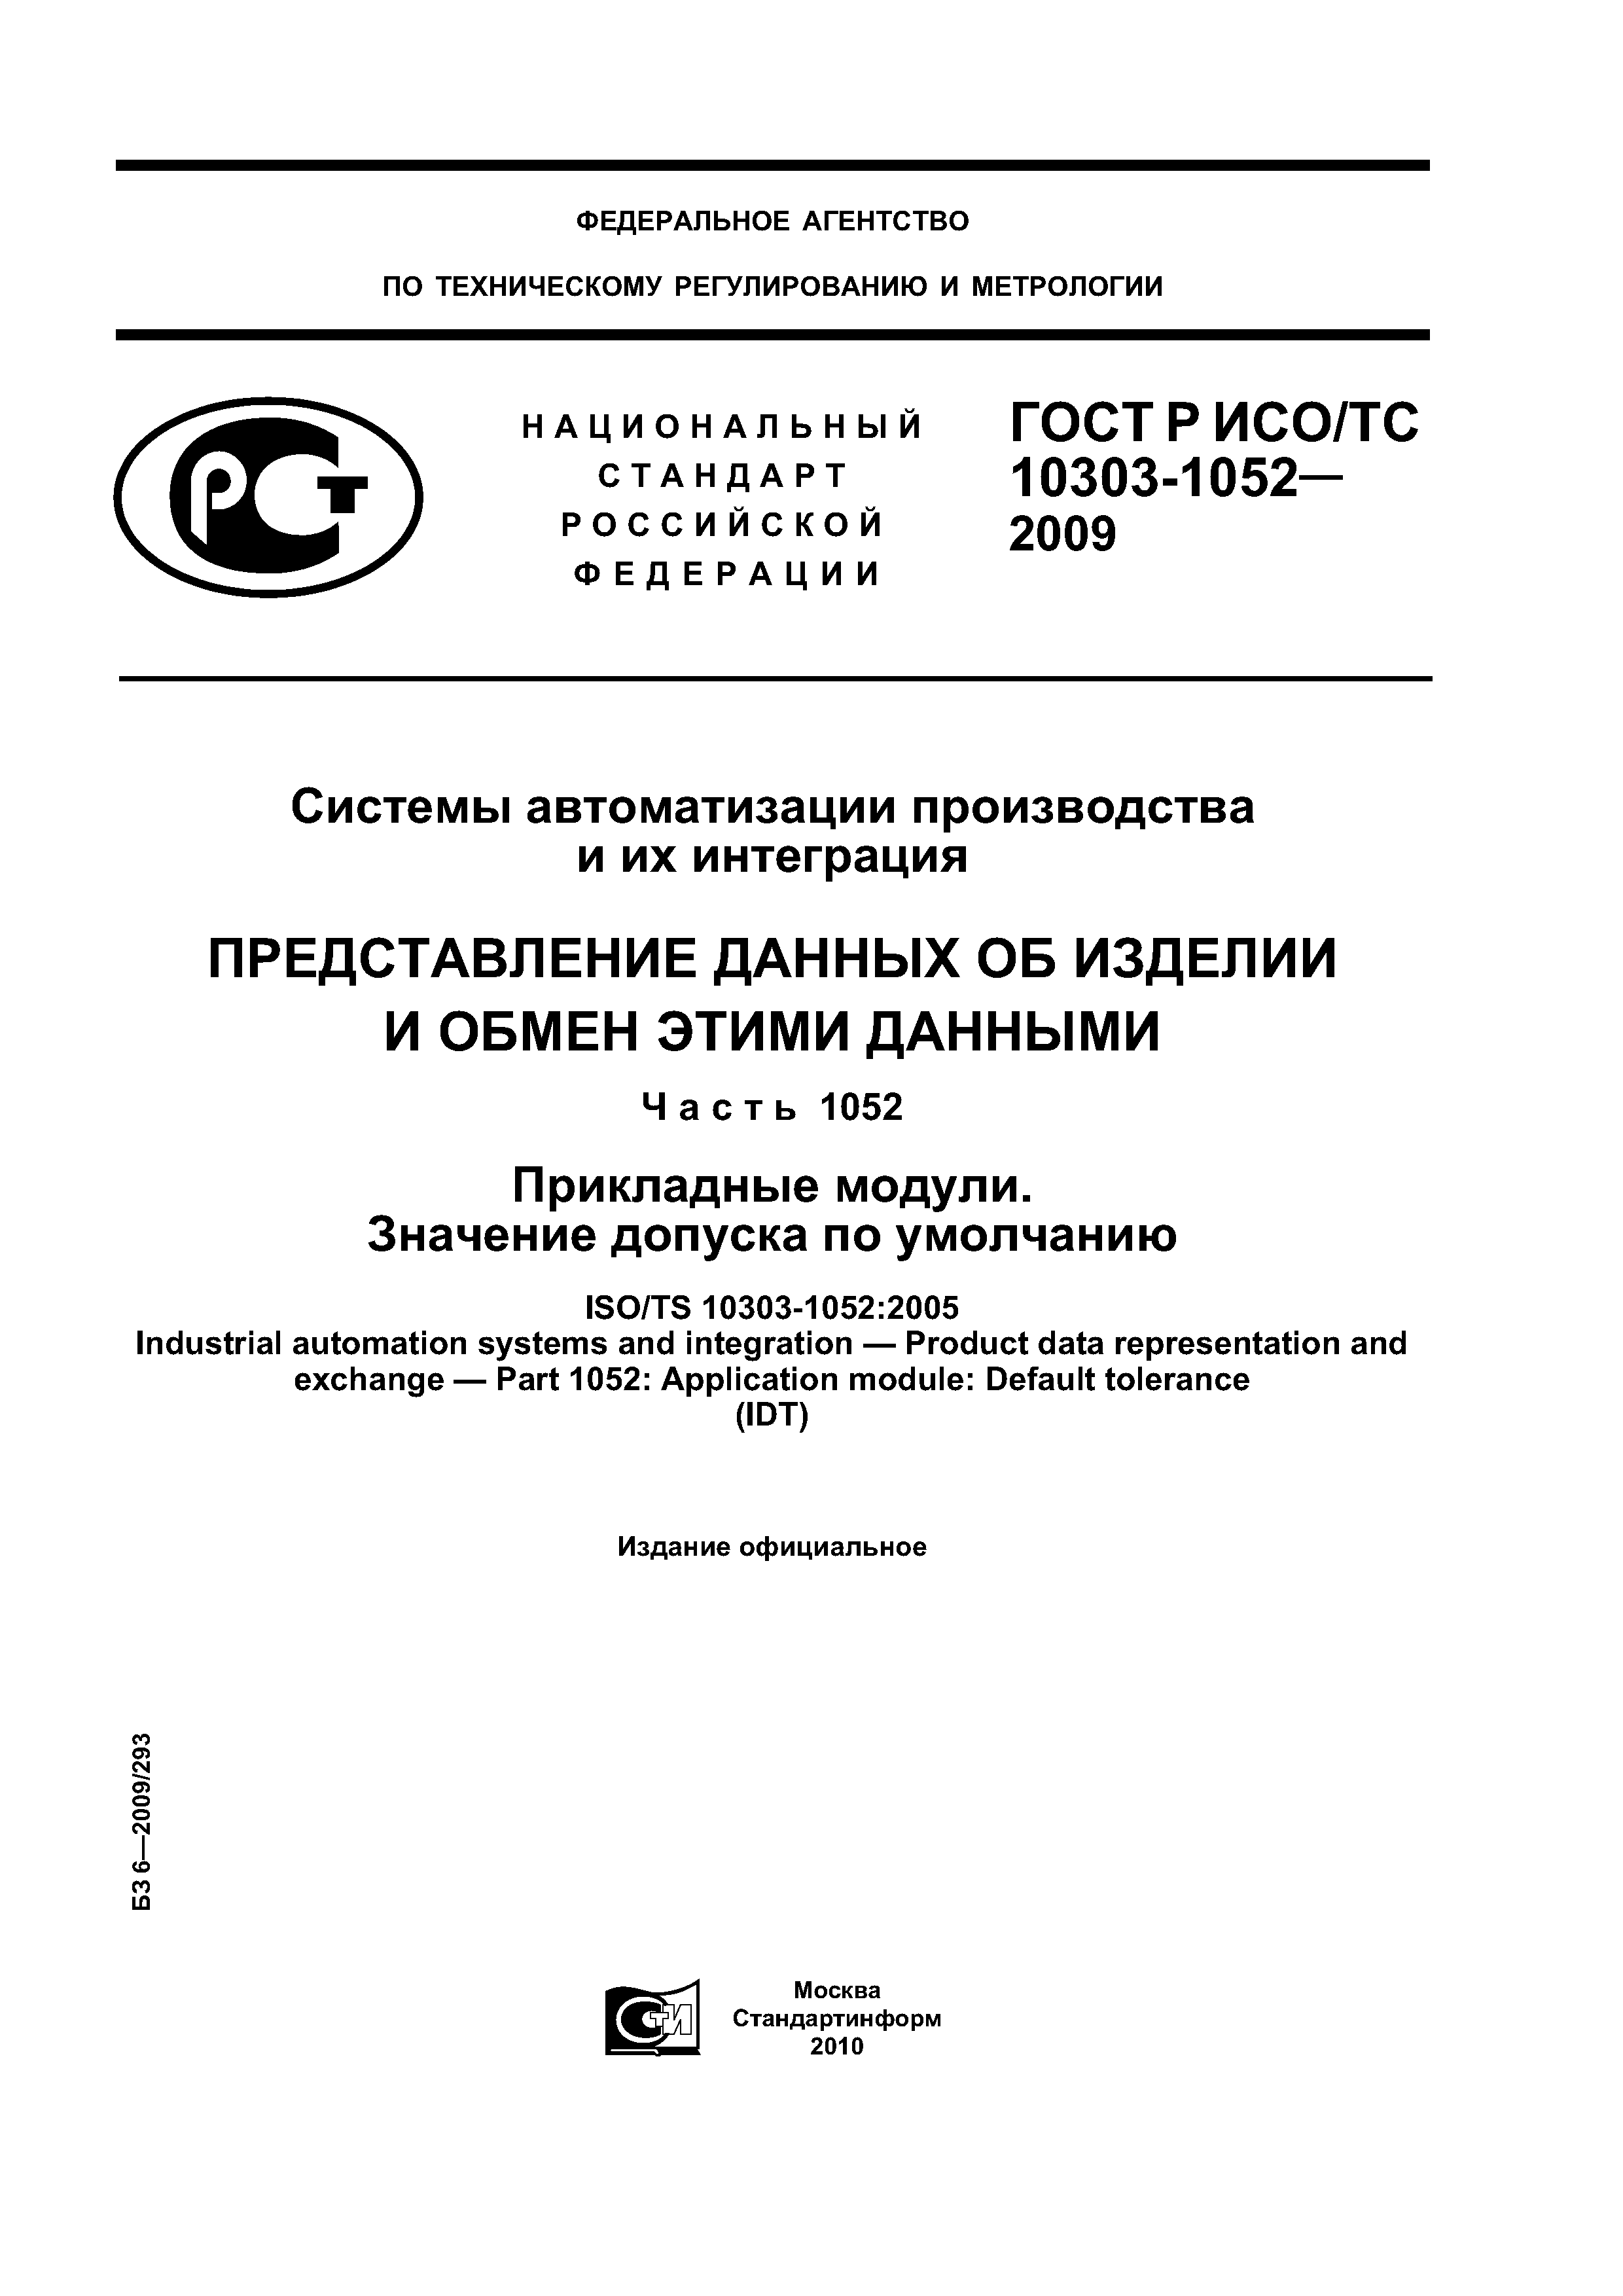 ГОСТ Р ИСО/ТС 10303-1052-2009